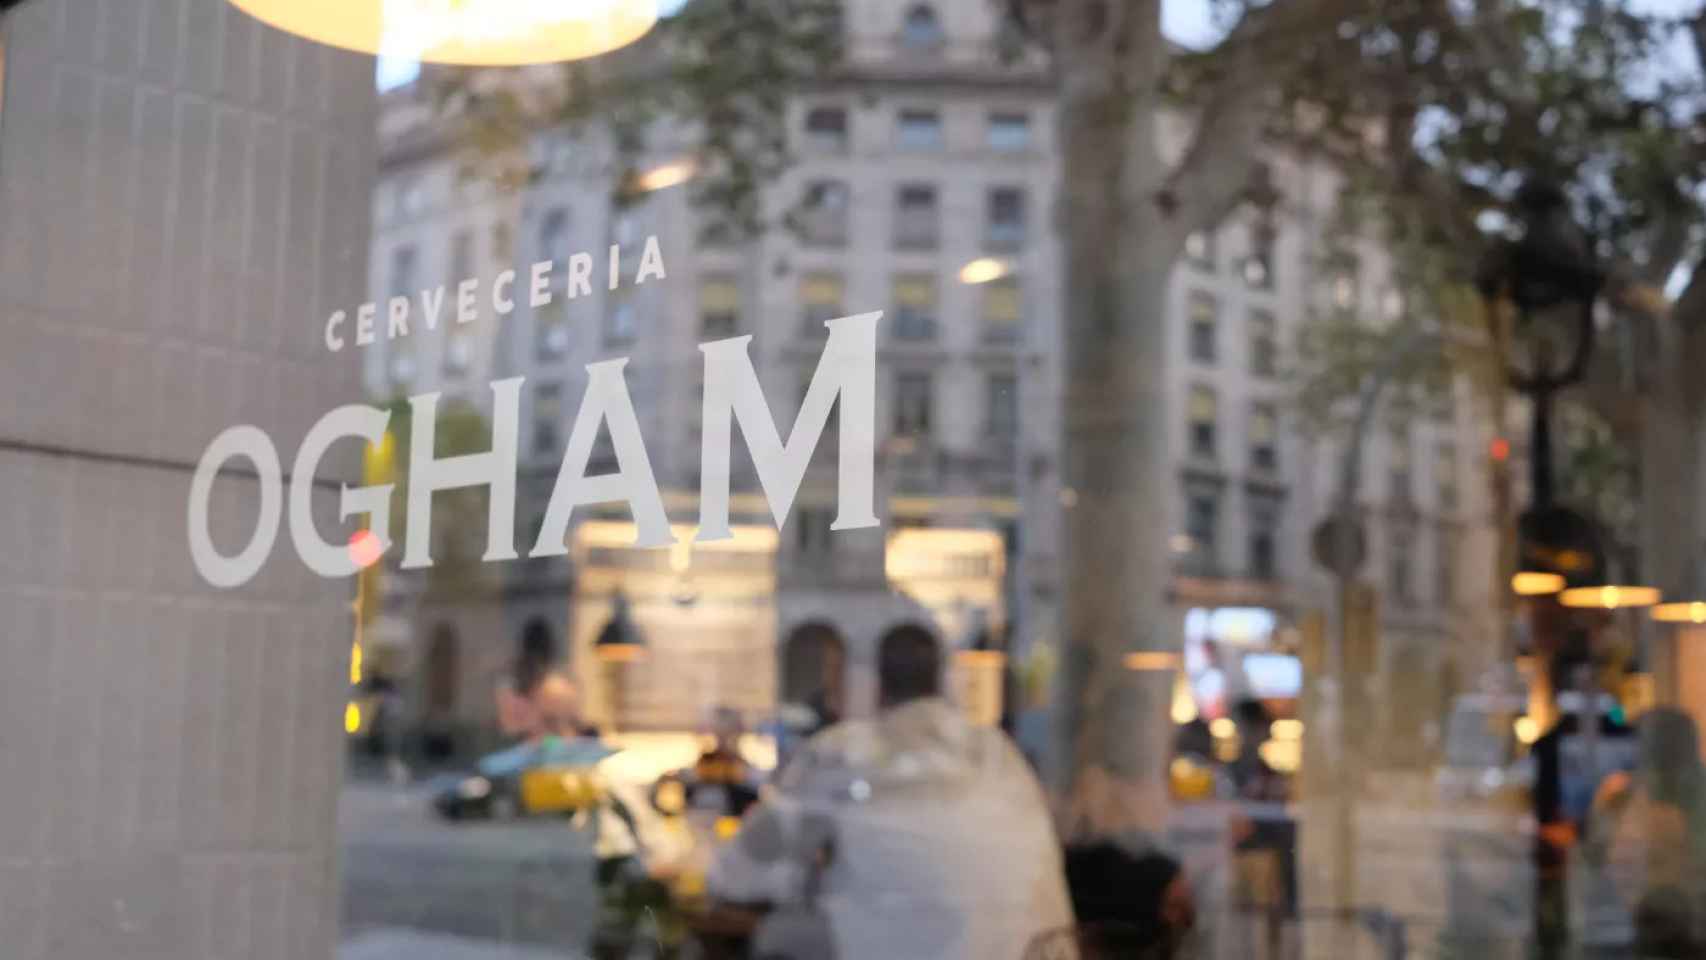 Nuevo local de Ogham en Barcelona / OGHAM